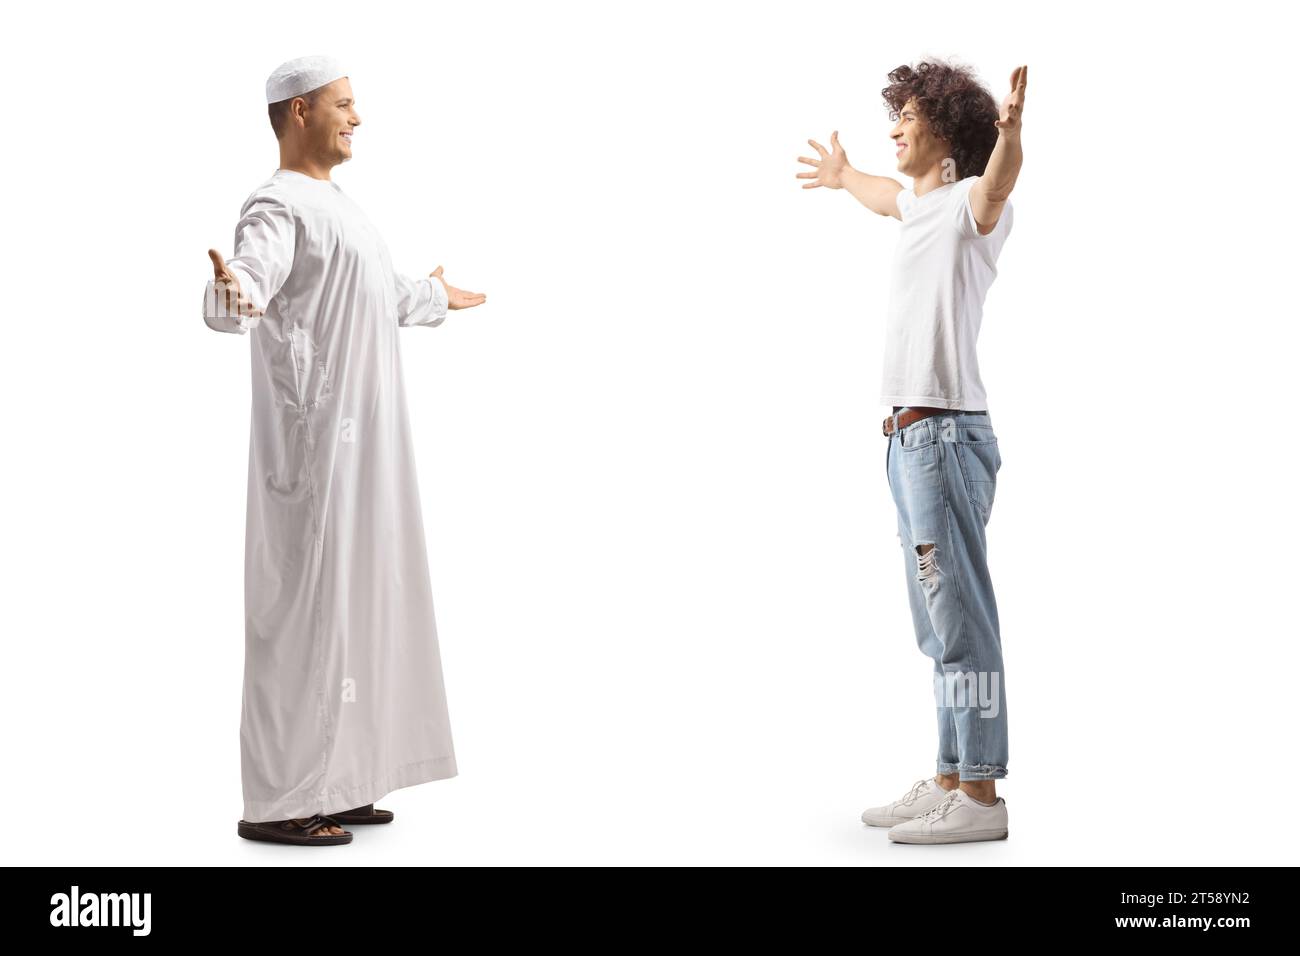 Uomo musulmano che incontra un amico cristiano isolato su sfondo bianco Foto Stock